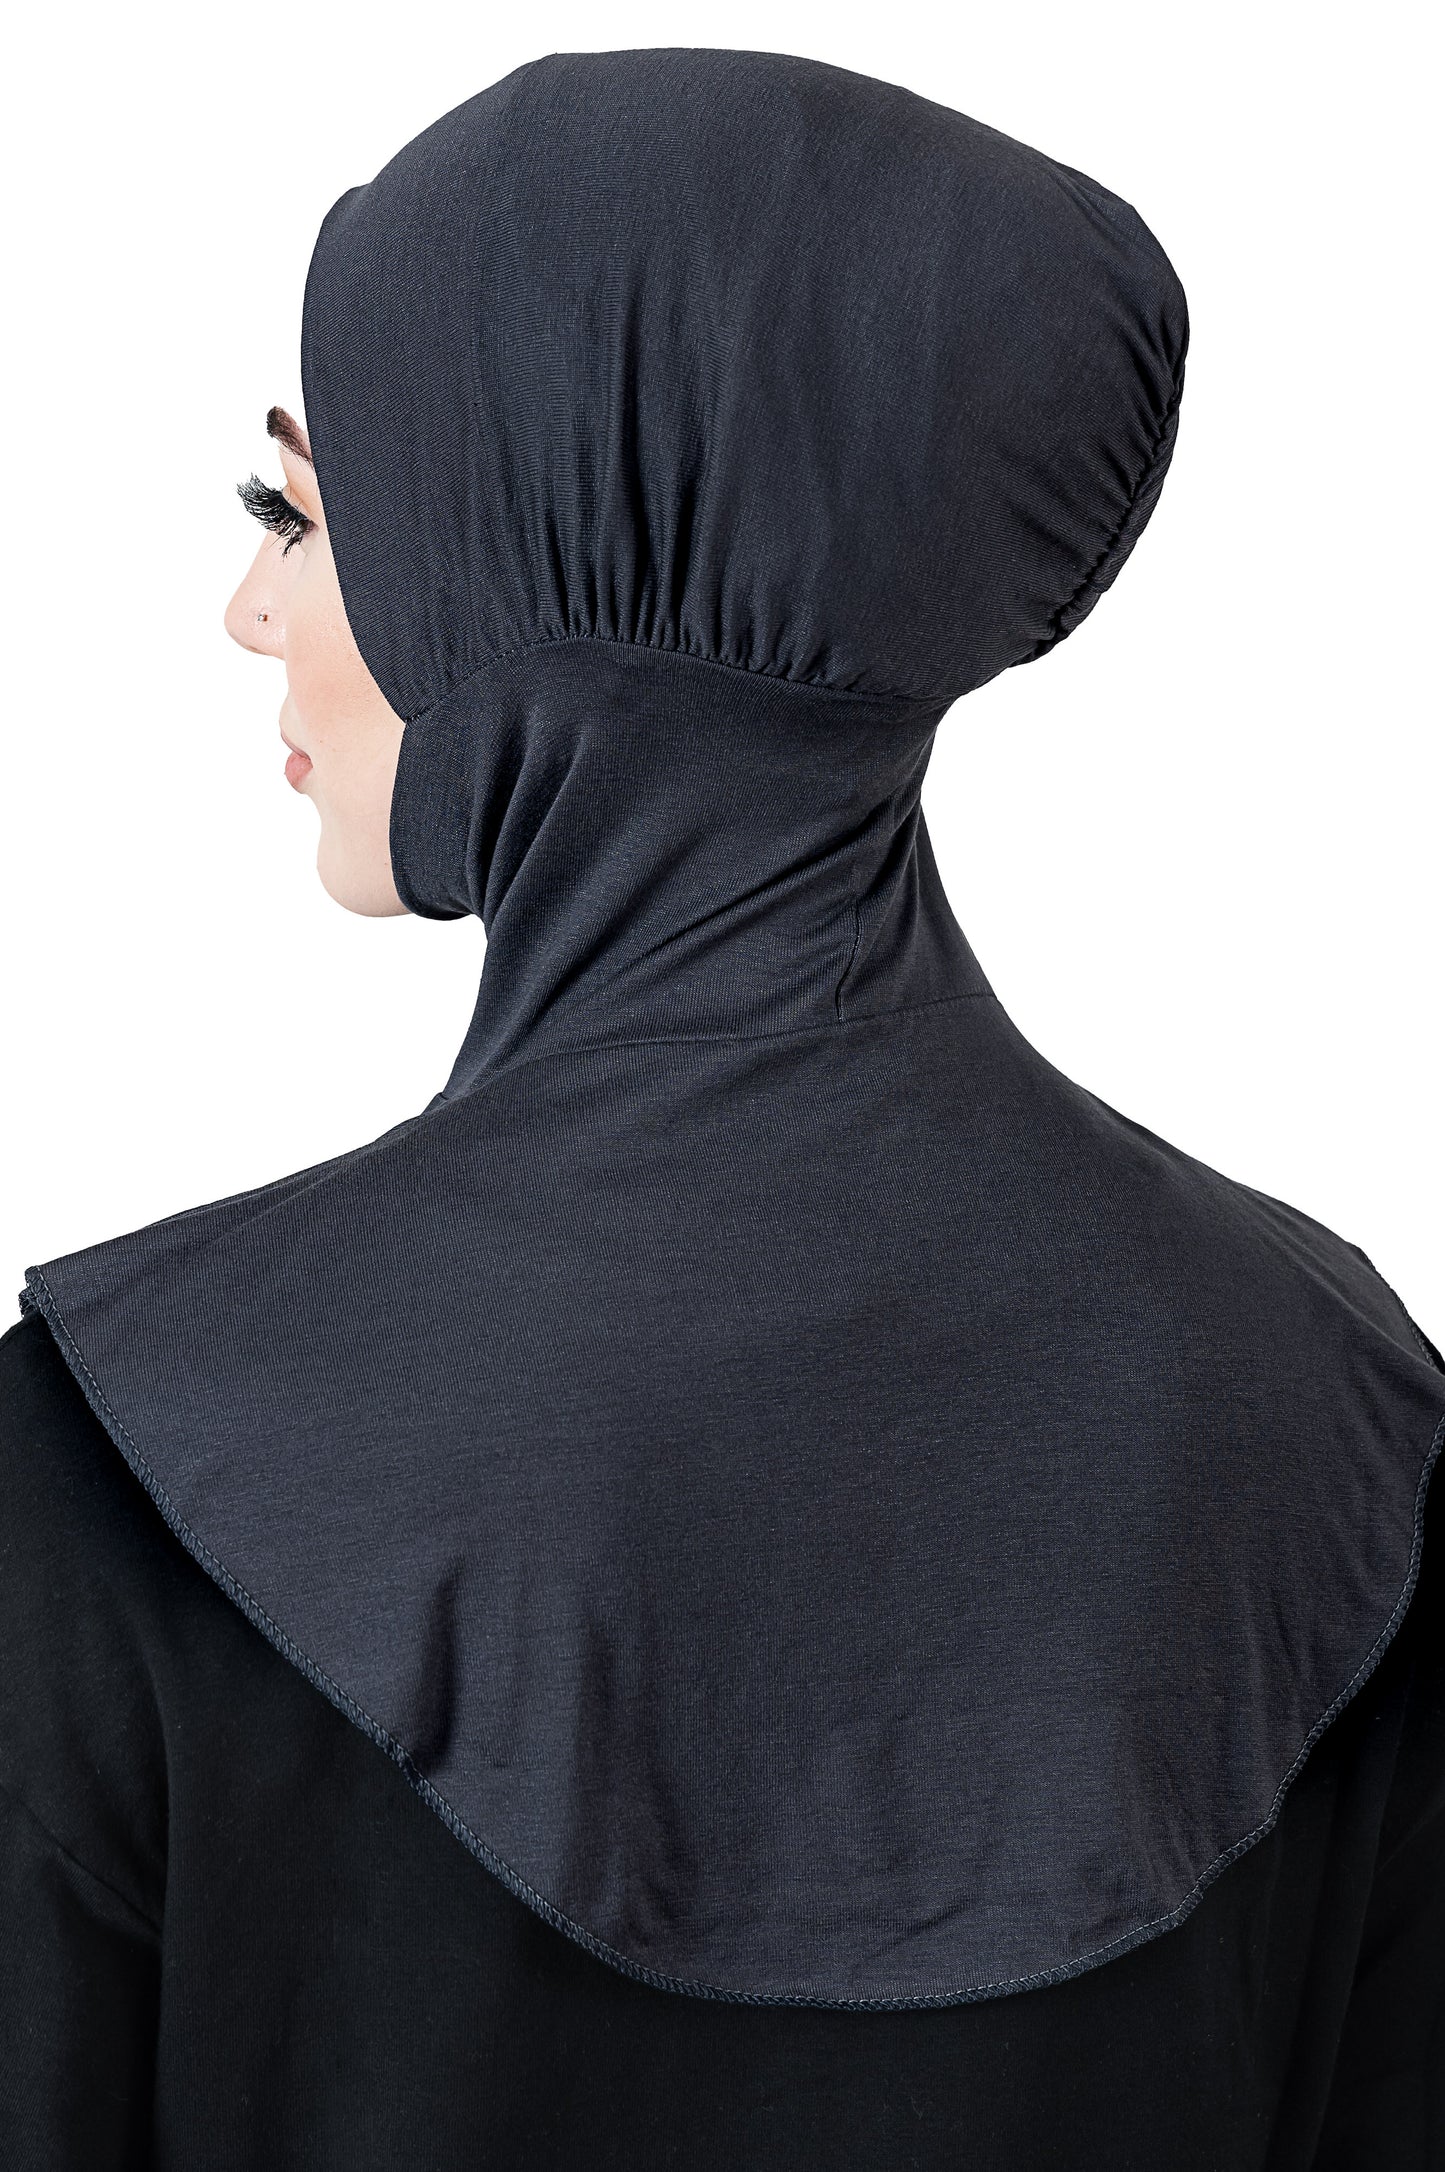 New- Ninja Cotton Cap in Dark Grey